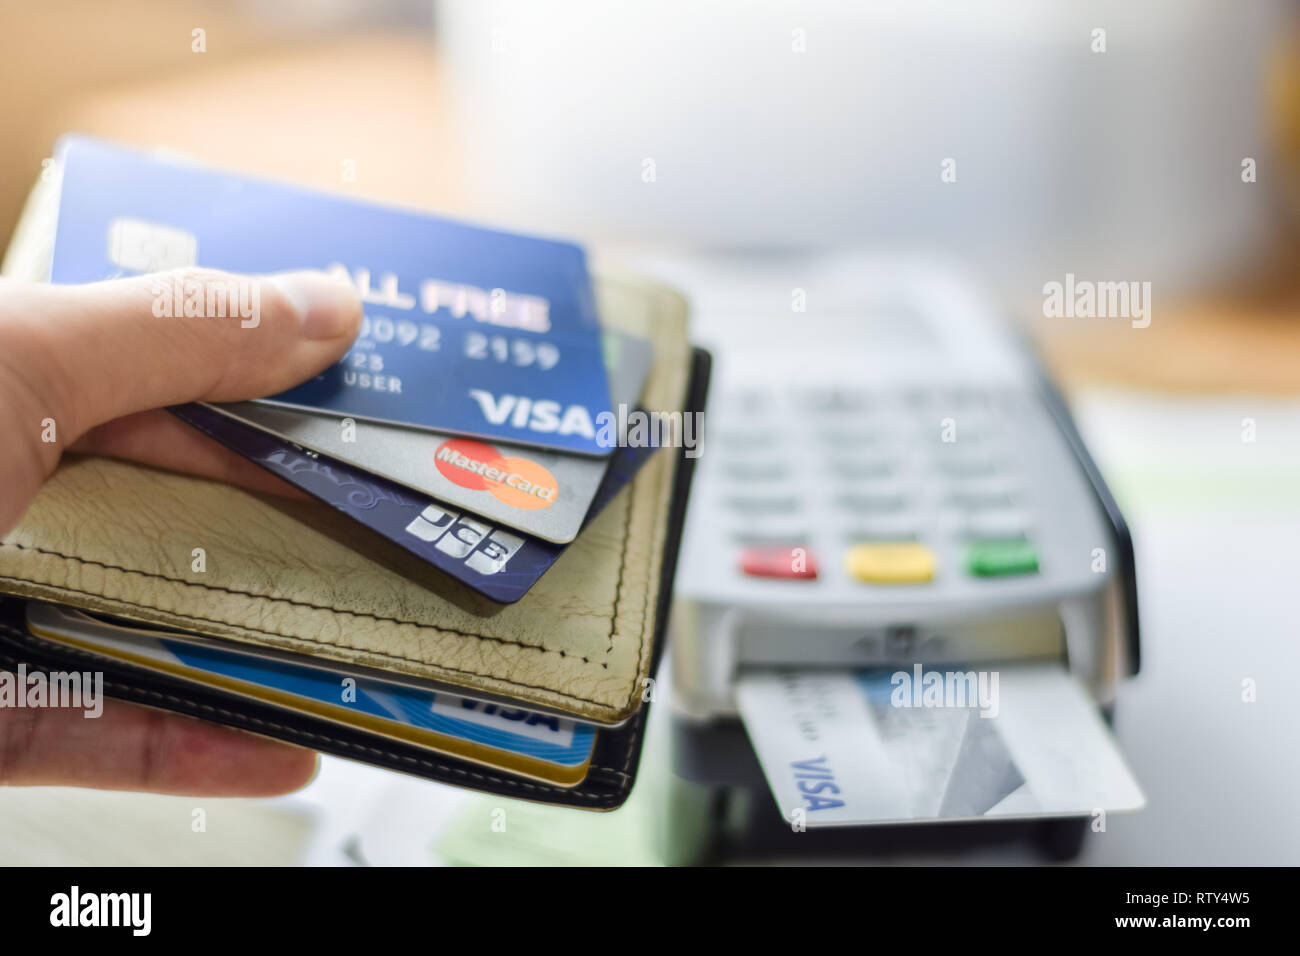 Bangkok, Thaïlande - 3 mars, 2019 : Groupe des cartes de crédit sur carte de crédit VISA avec la machine, Master Card et JCB logos de marques close up Banque D'Images